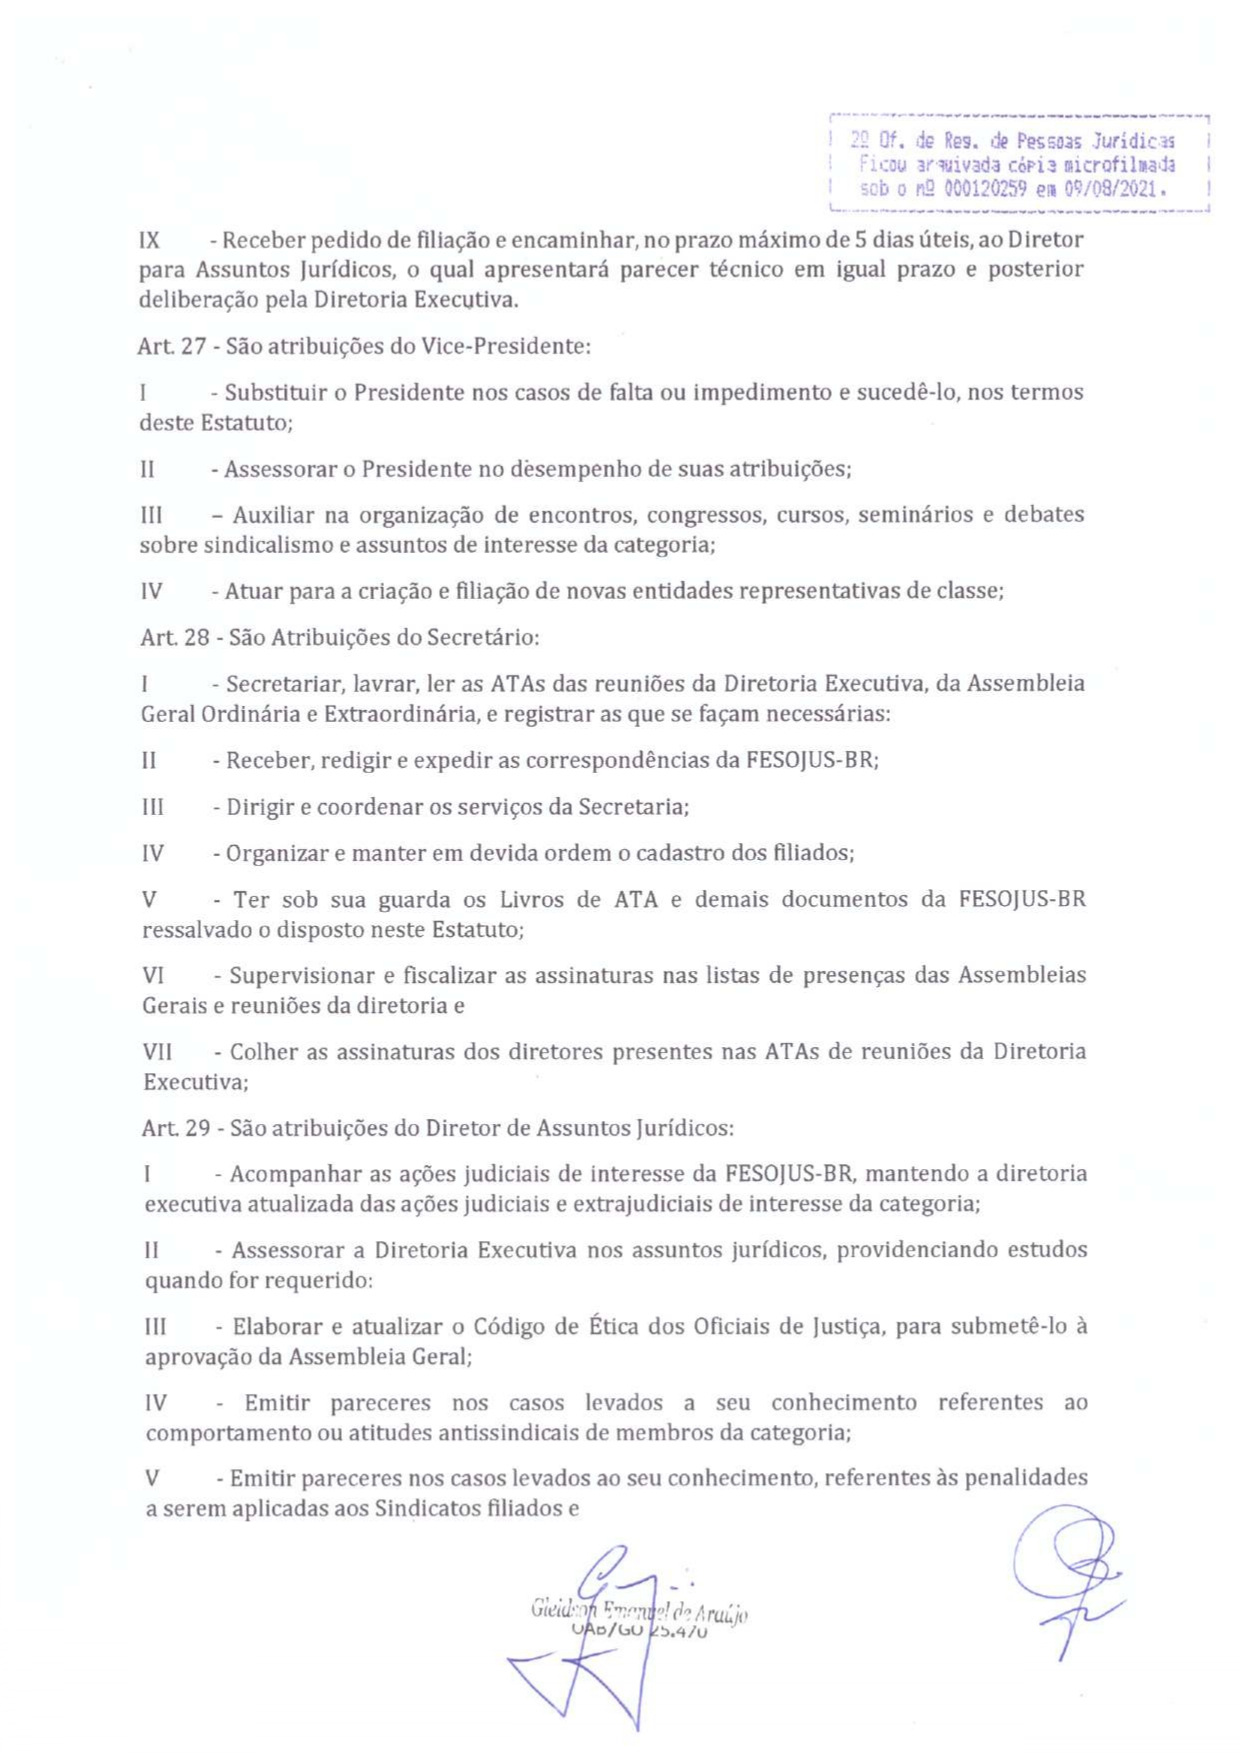 ESTATUTO FEDERAÇÃO DAS ENTIDADES SINDICAIS DOS OFICIAIS DE JUSTIÇA DO BRASIL - FESOJUS-BR_compressed_pages-to-jpg-0013